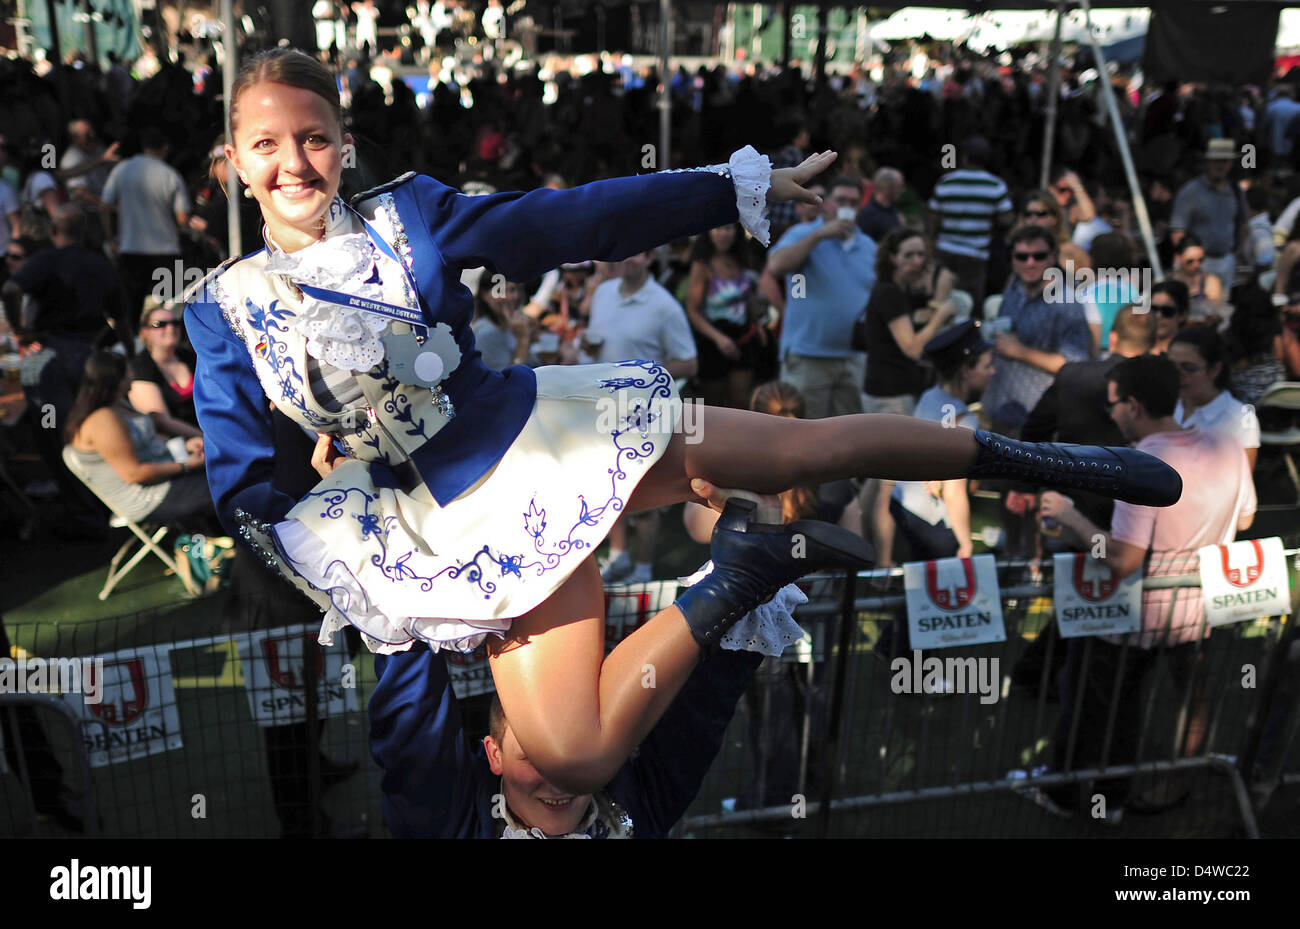 Eine akrobatische Vorführung beim Oktoberfest im en el Central Park de Nueva York, am Samstag (25.09.2010). Viele Besucher des Festes nahmen am Samstag zuvor an der traditionellen Steuben-Parade en Nueva York teil, bei der die Kultur der deutschen Einwanderer bewahrt werden soll. Foto: Aníbal dpa Foto de stock